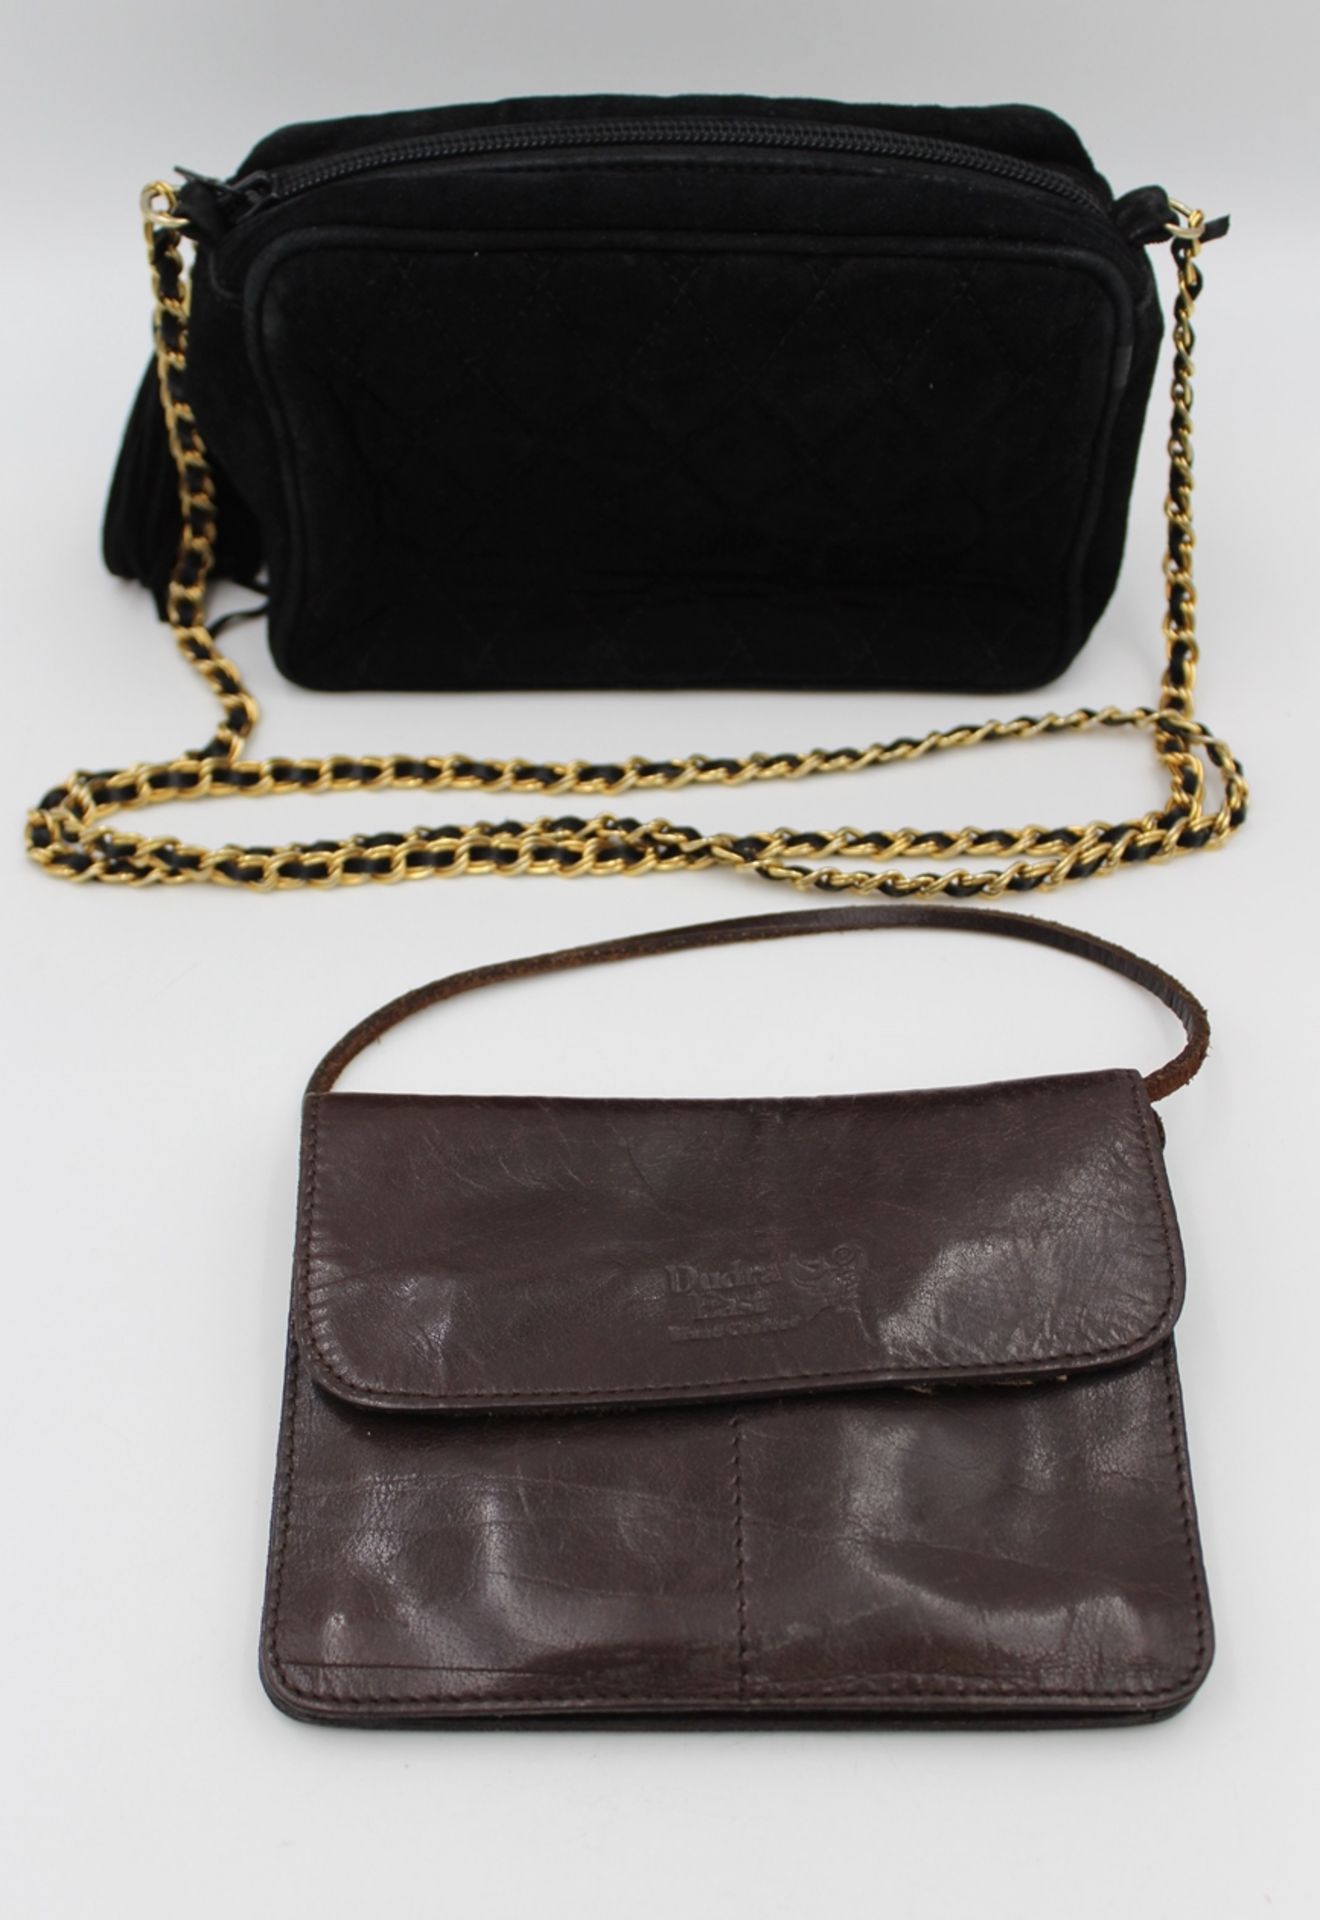 2x kl. Handtaschen, Classic und Dudra, leichte Tragespuren, ca. 12 x 15cm und 12 x 17cm.